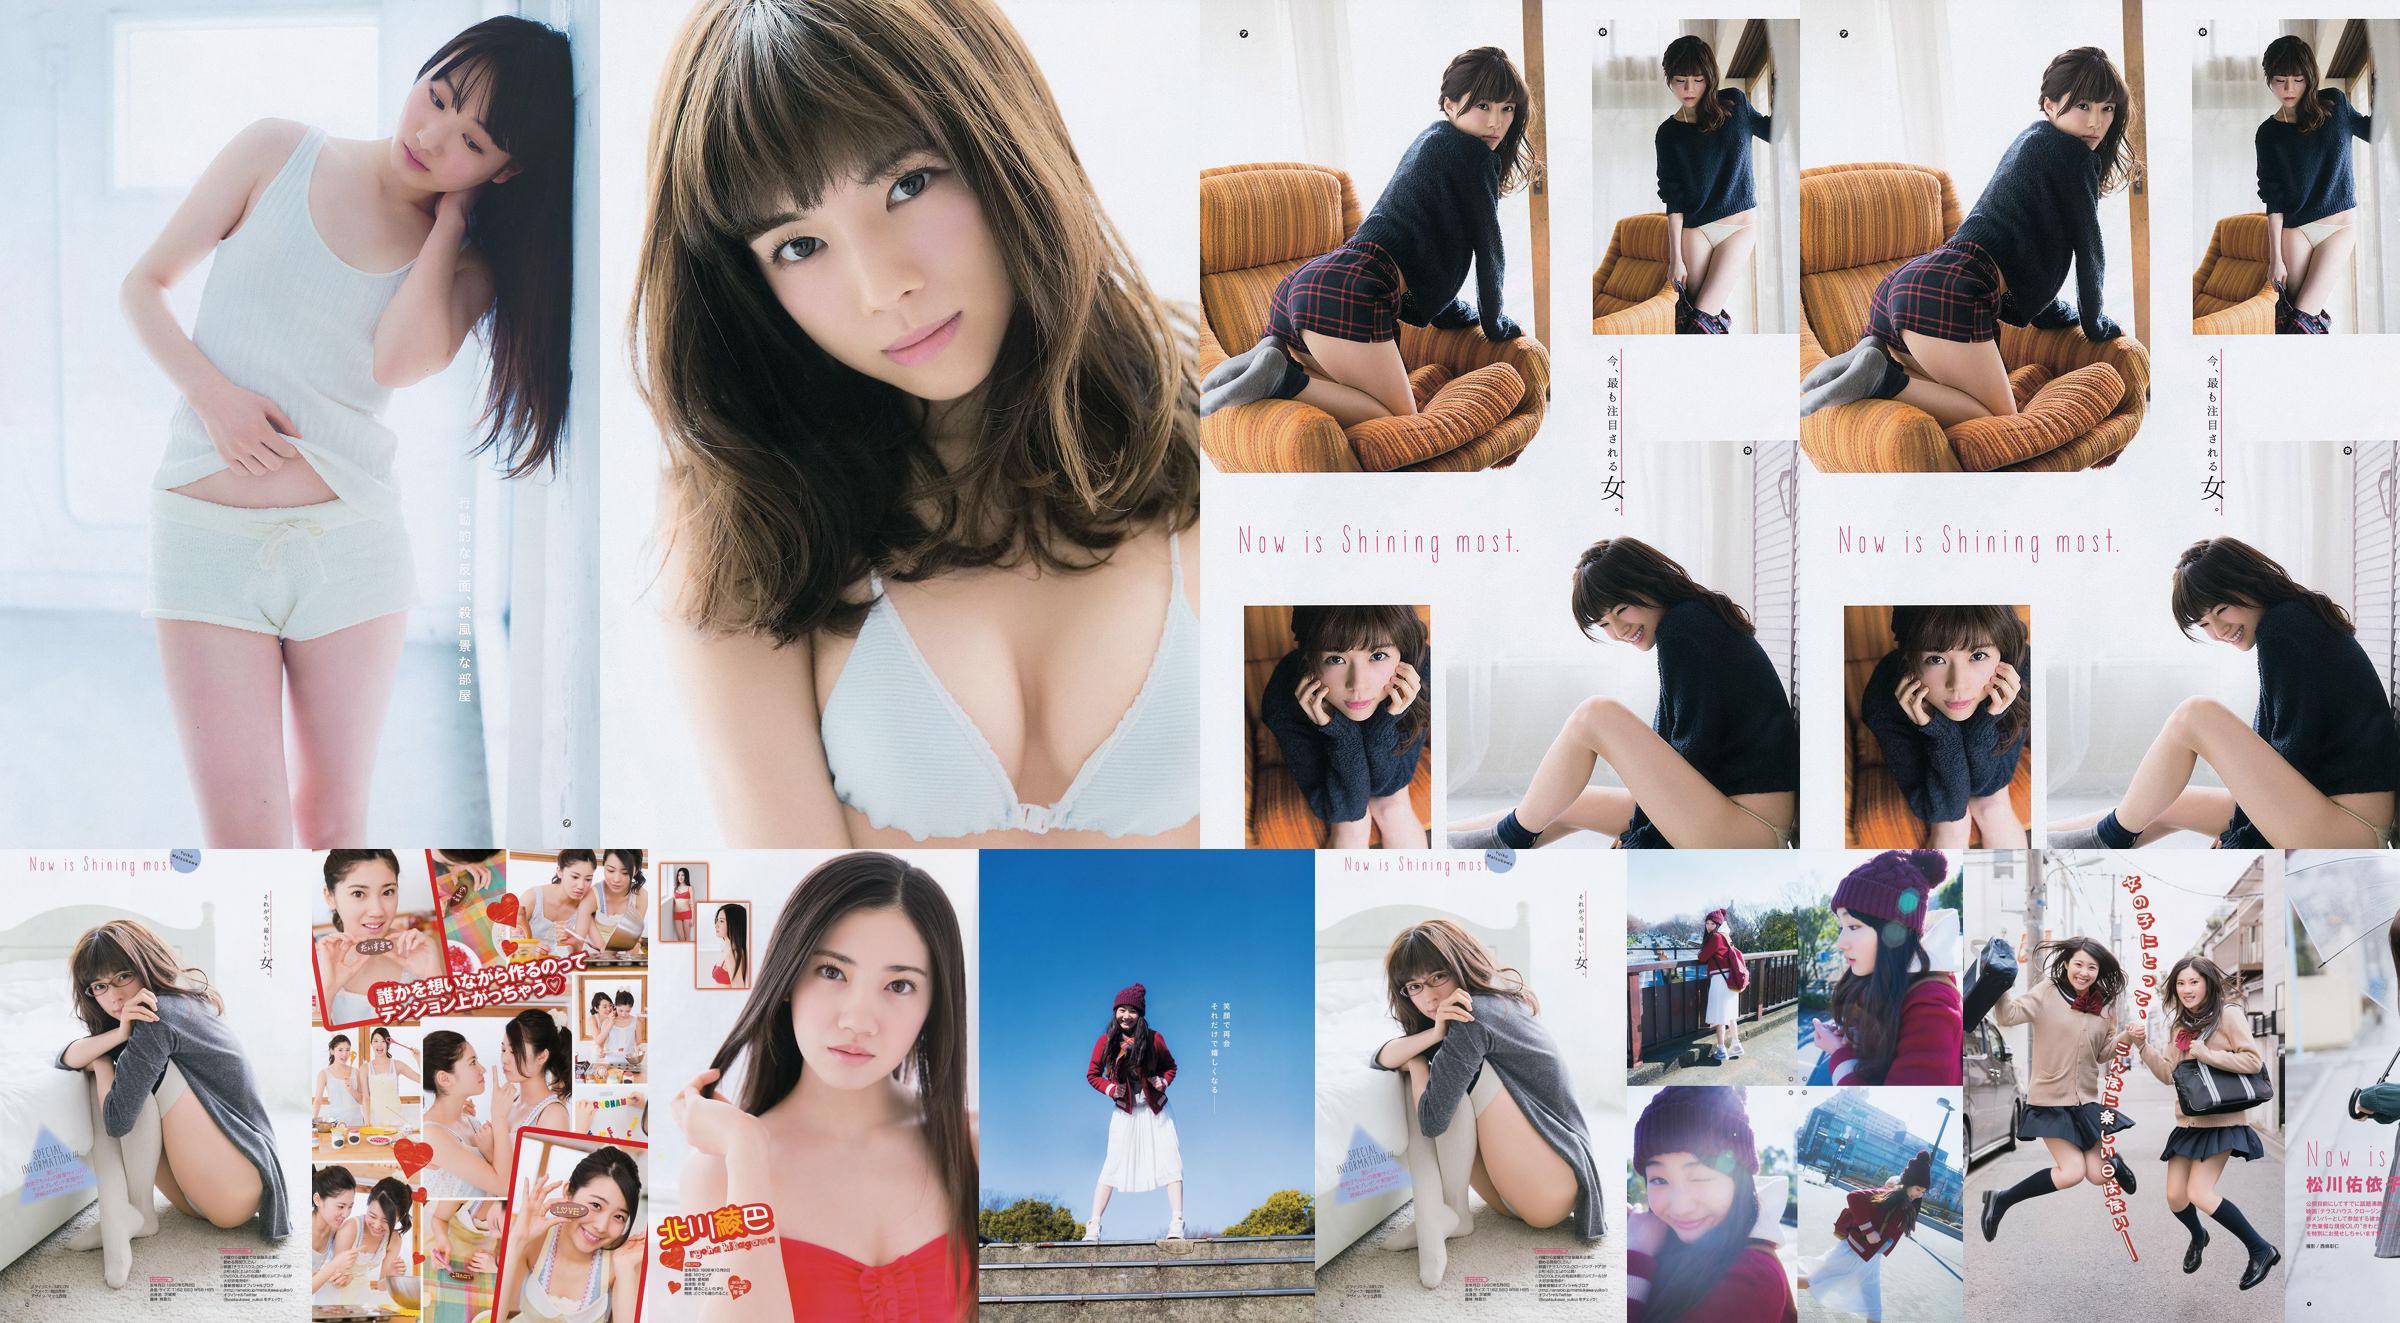 [Young Gangan] Ryoha Kitagawa Ami Miyamae Yuiko Matsukawa Narumi Akizuki 2015 No.04 Photograph No.fe5007 Page 2